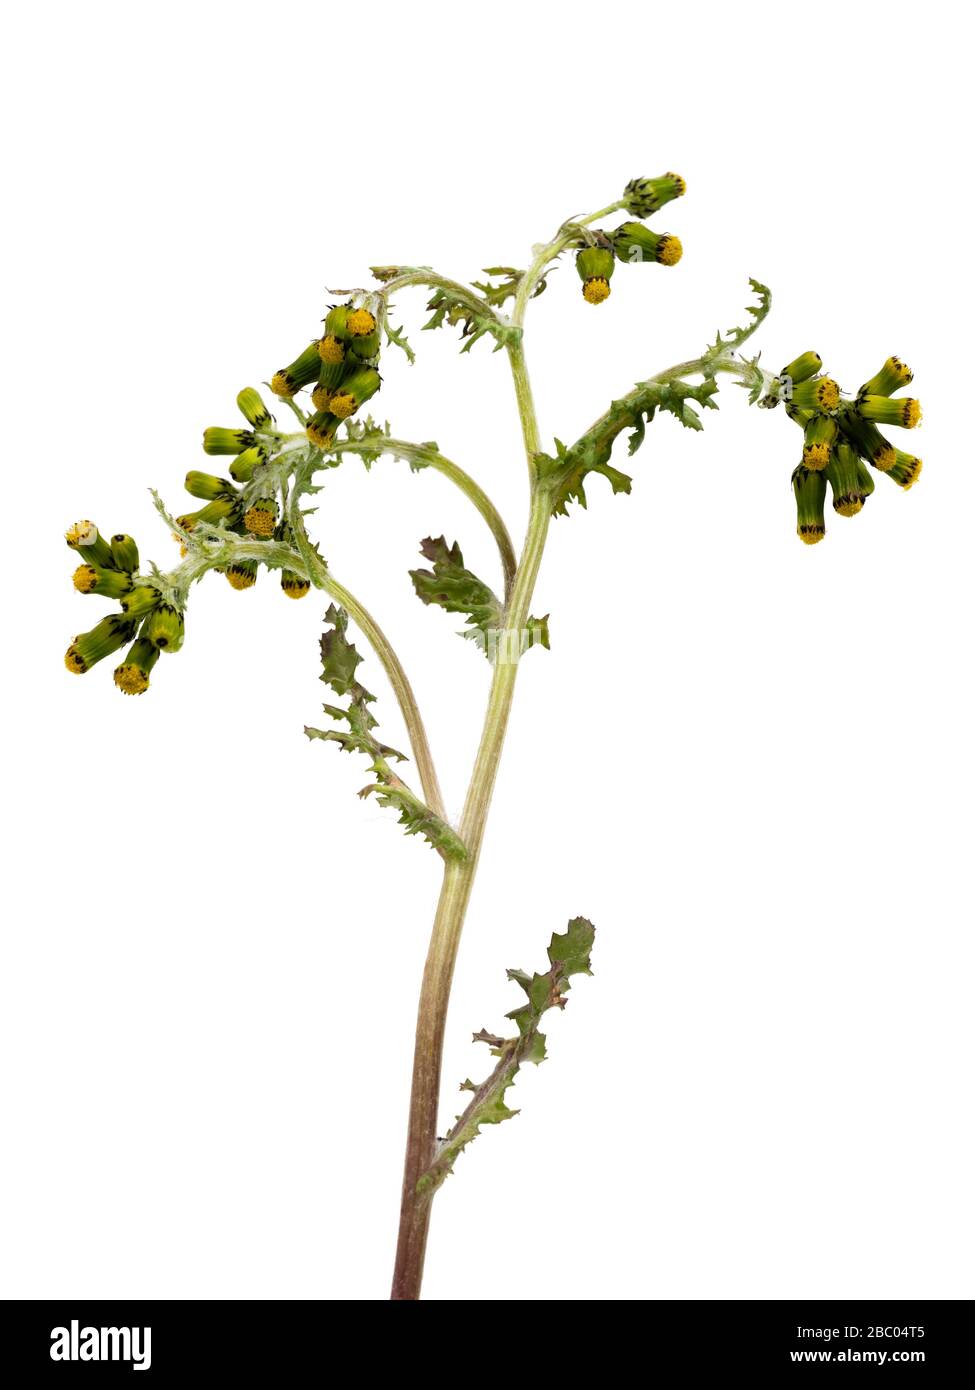 Blumen und Laub der jährlichen britischen Unkrautart Senecio vulgaris, Erdsel, auf weißem Grund Stockfoto